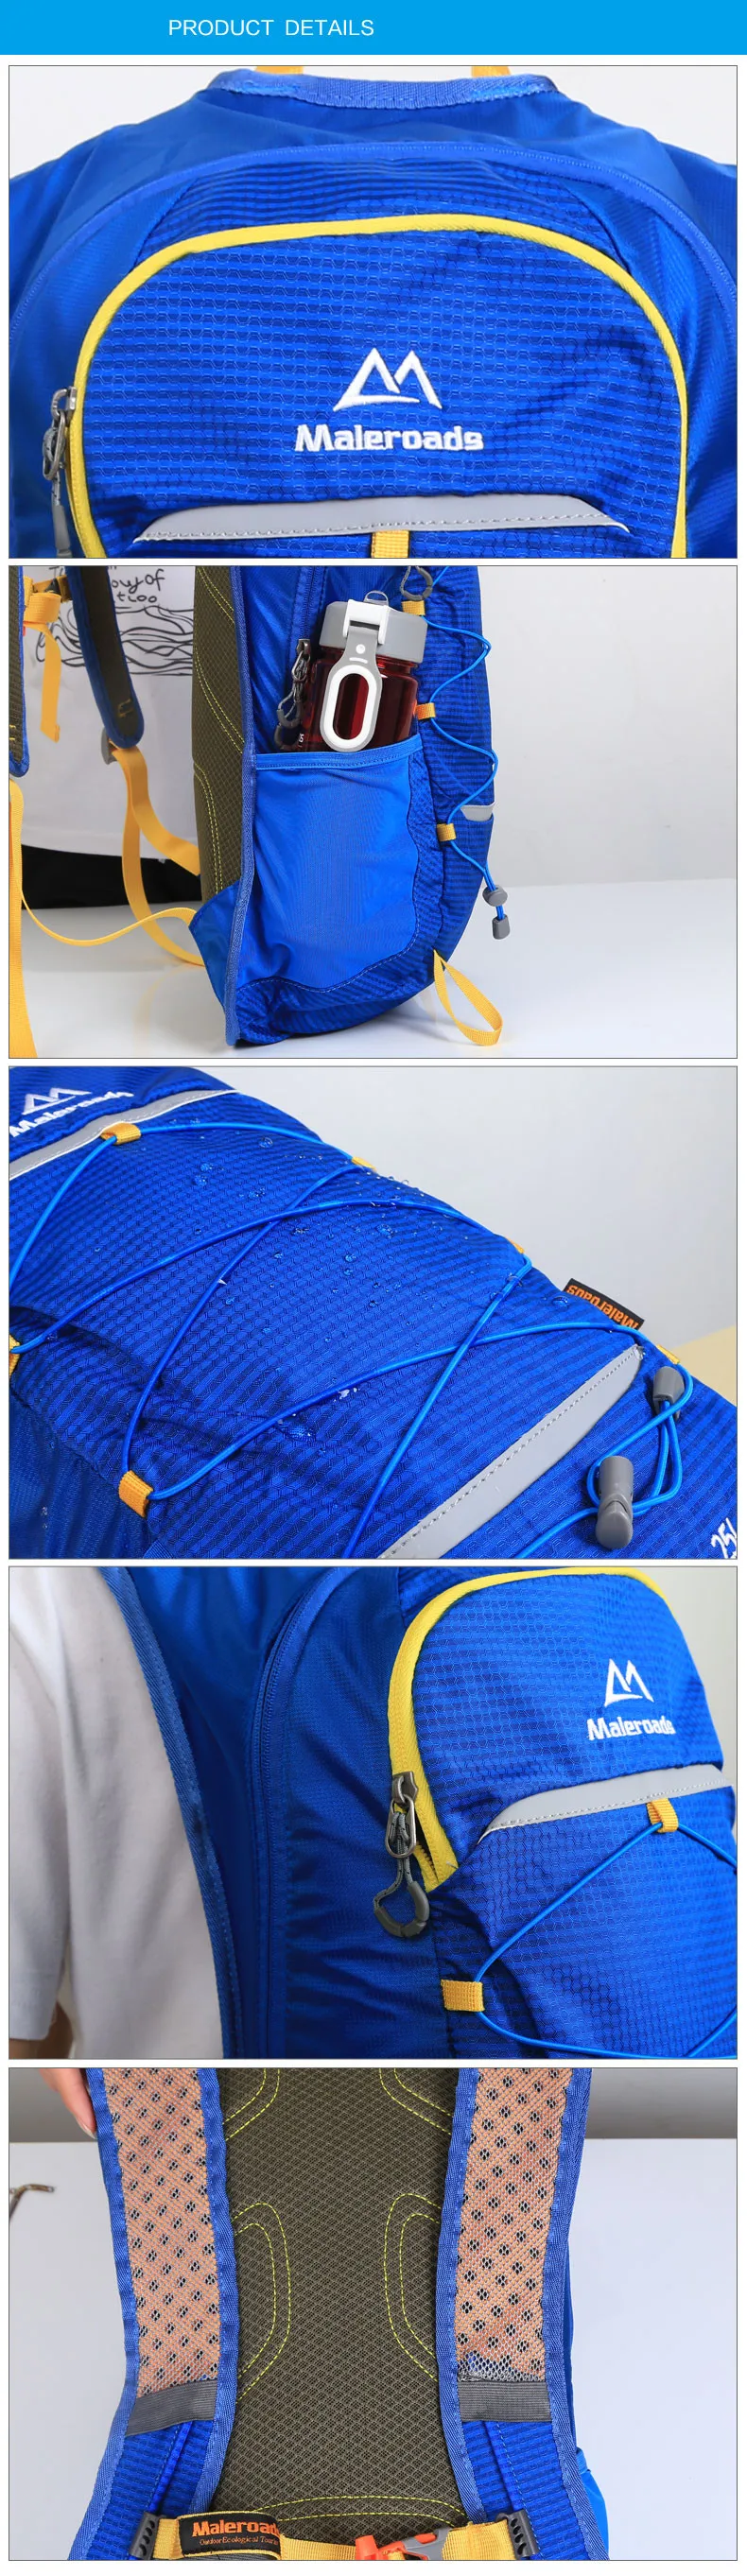 Maleroads рюкзак для верховой езды, повседневный рюкзак для путешествий, походный лагерь, мочила для похода, для колледжа, студентов, школы, подростков